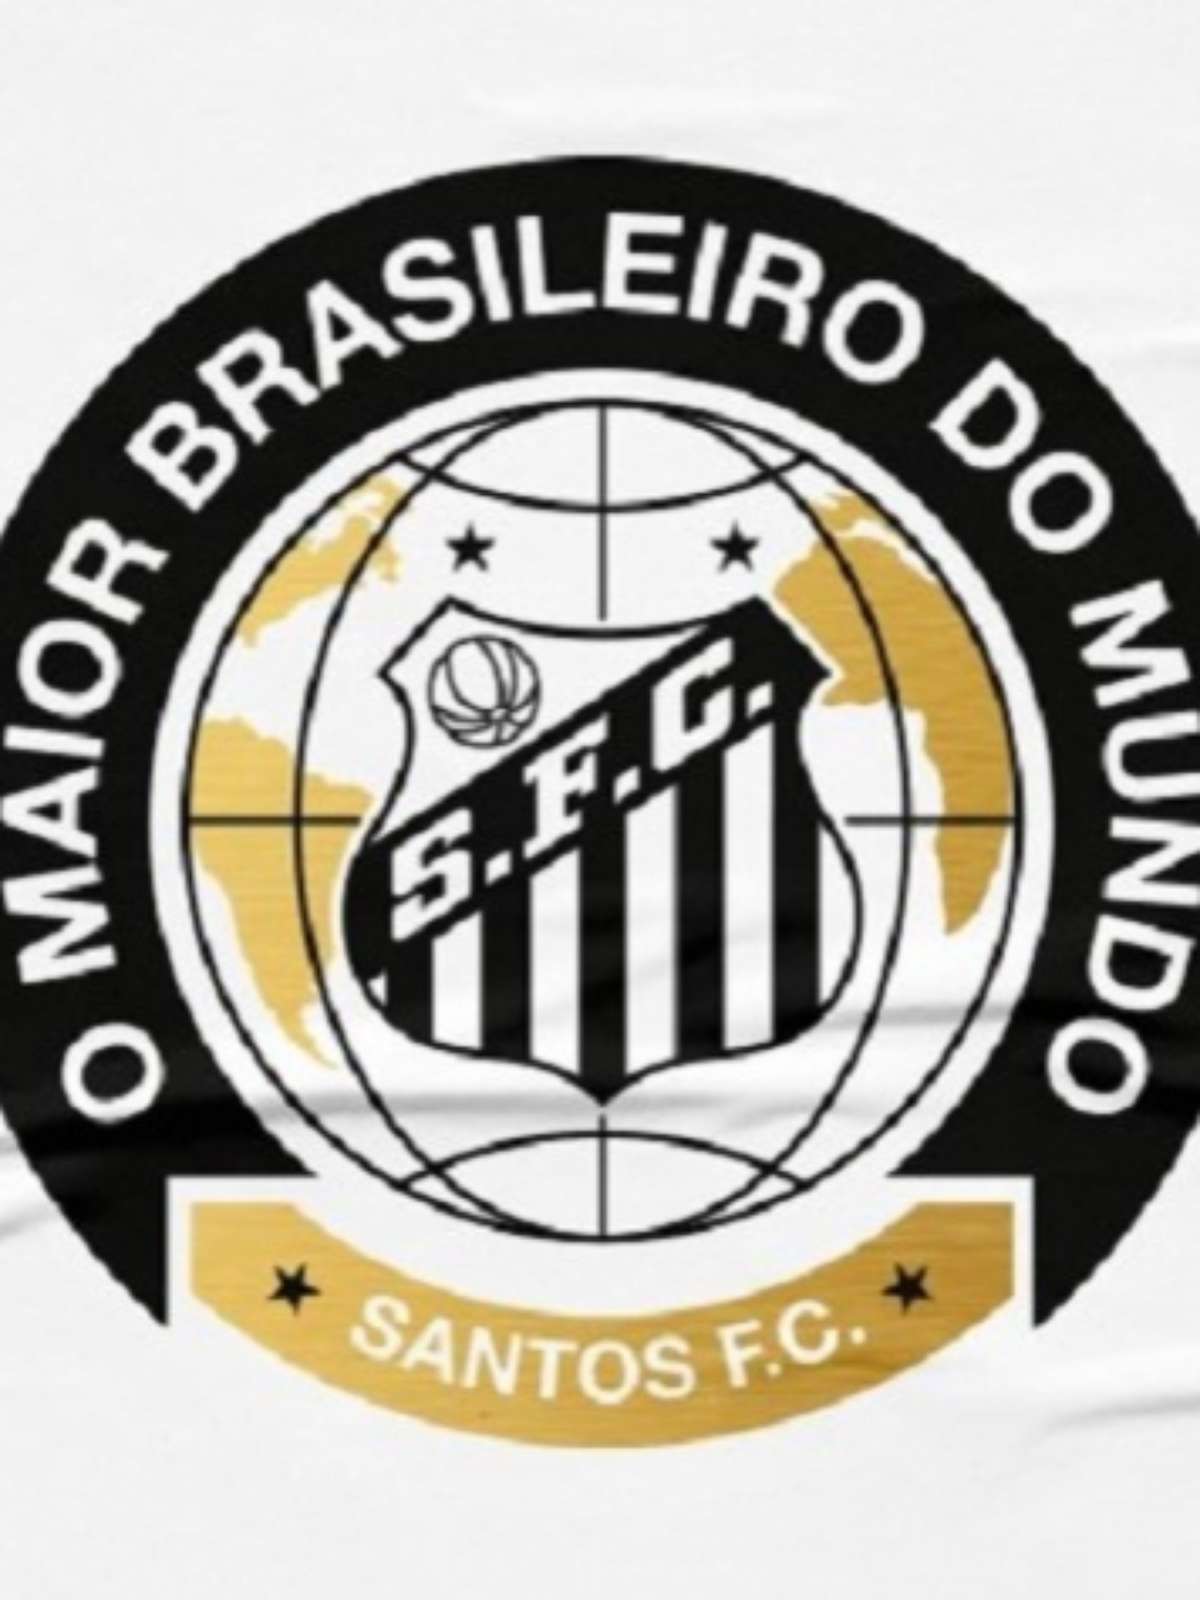 Santos Futebol Clube - O Maior Brasileiro do Mundo